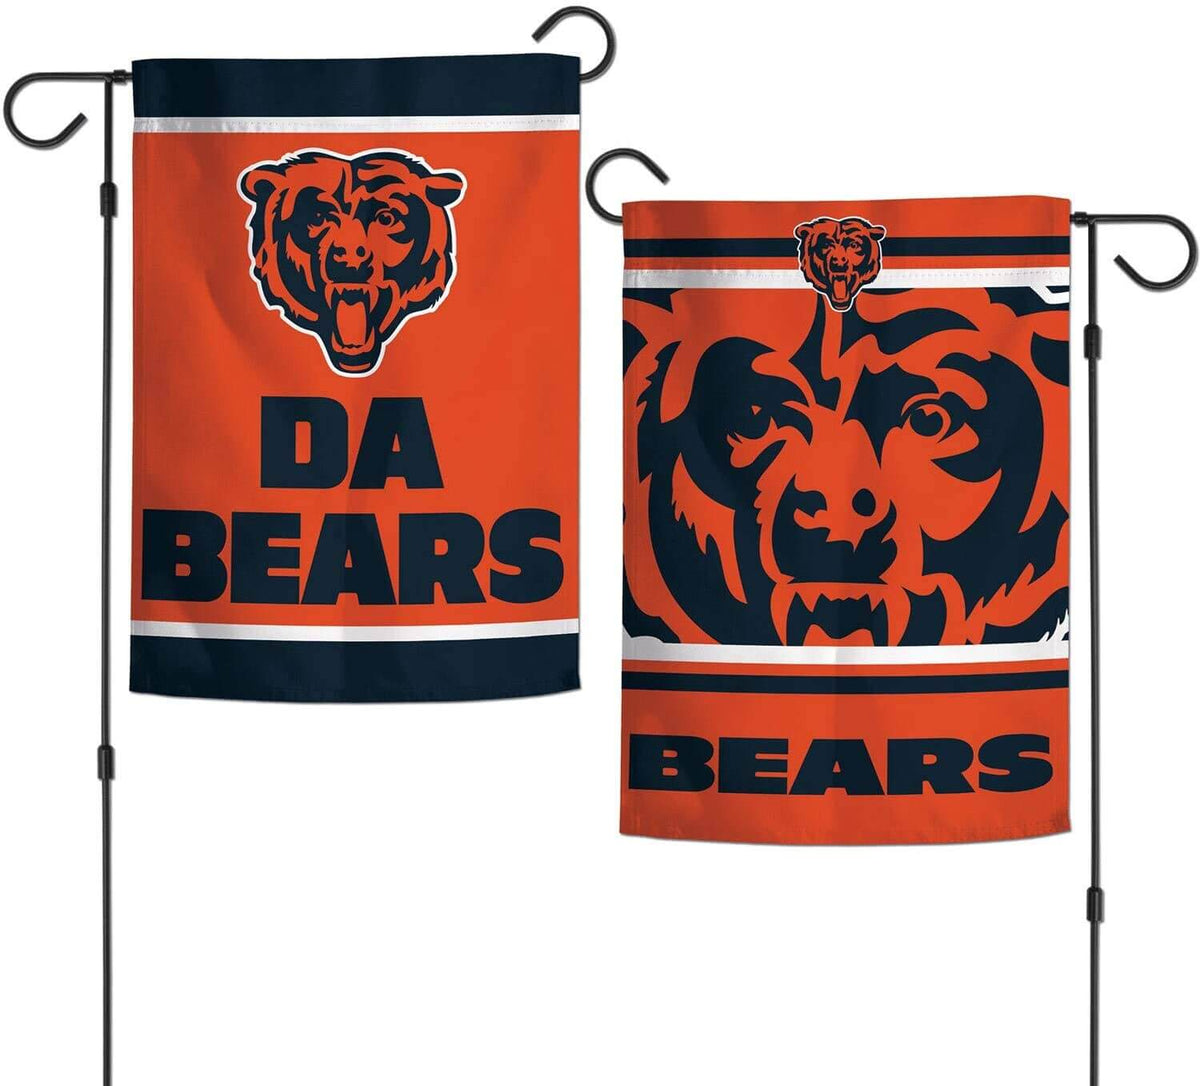 Chicago Bears 2-sided 'Da Bears' (12.5' x 18') Garden Flag